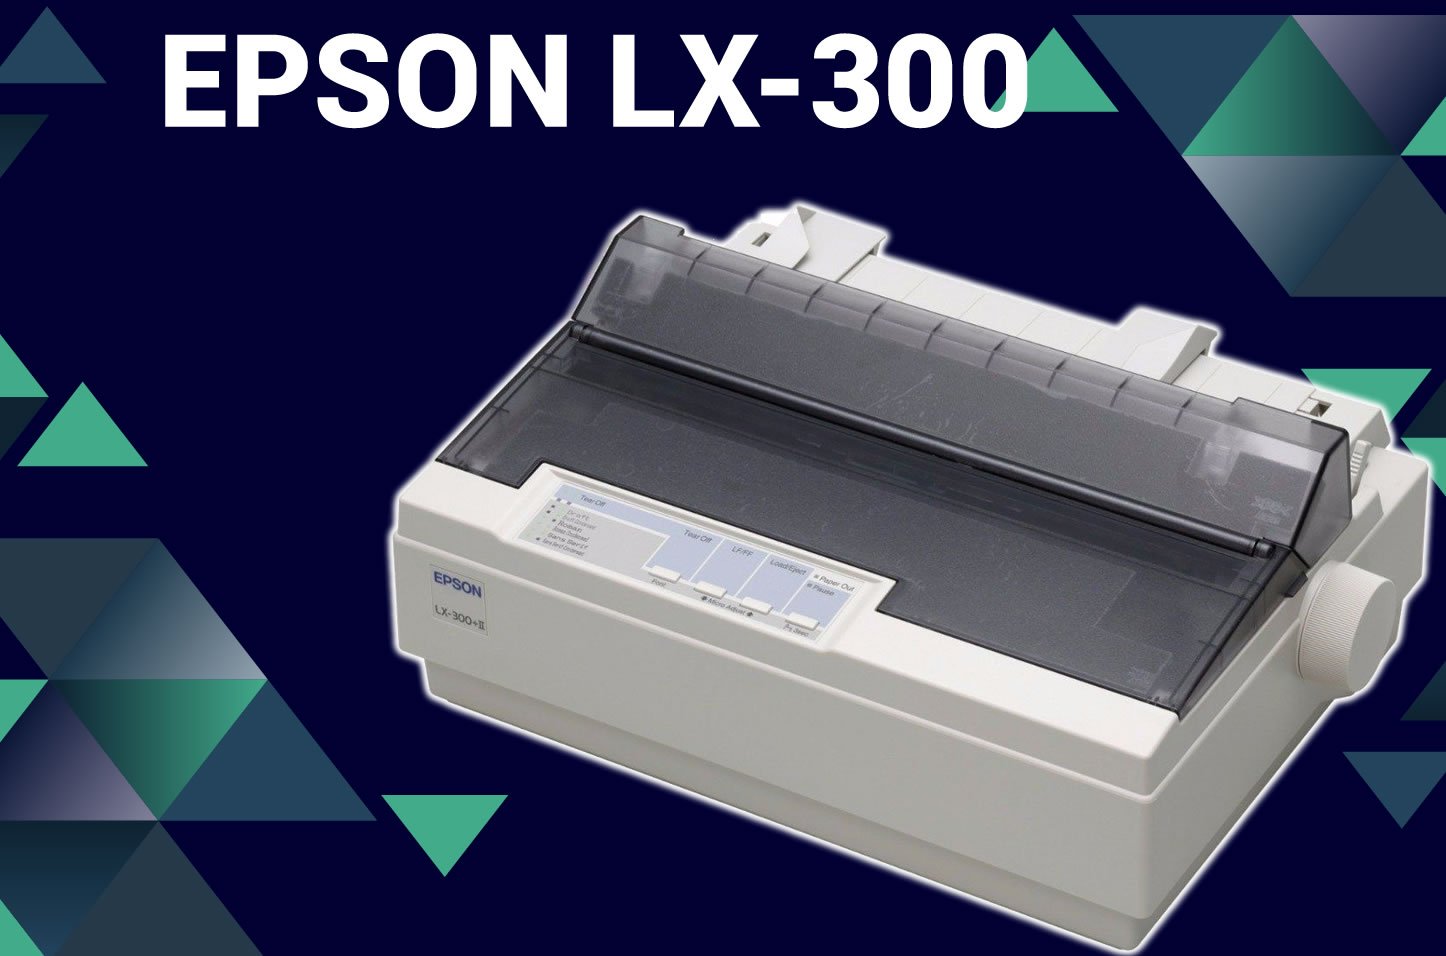 COMO INSTALAR A IMPRESSORA EPSON LX300 - instalação passo a passo - Driver - Impressora POS -  Piracaia Mais 